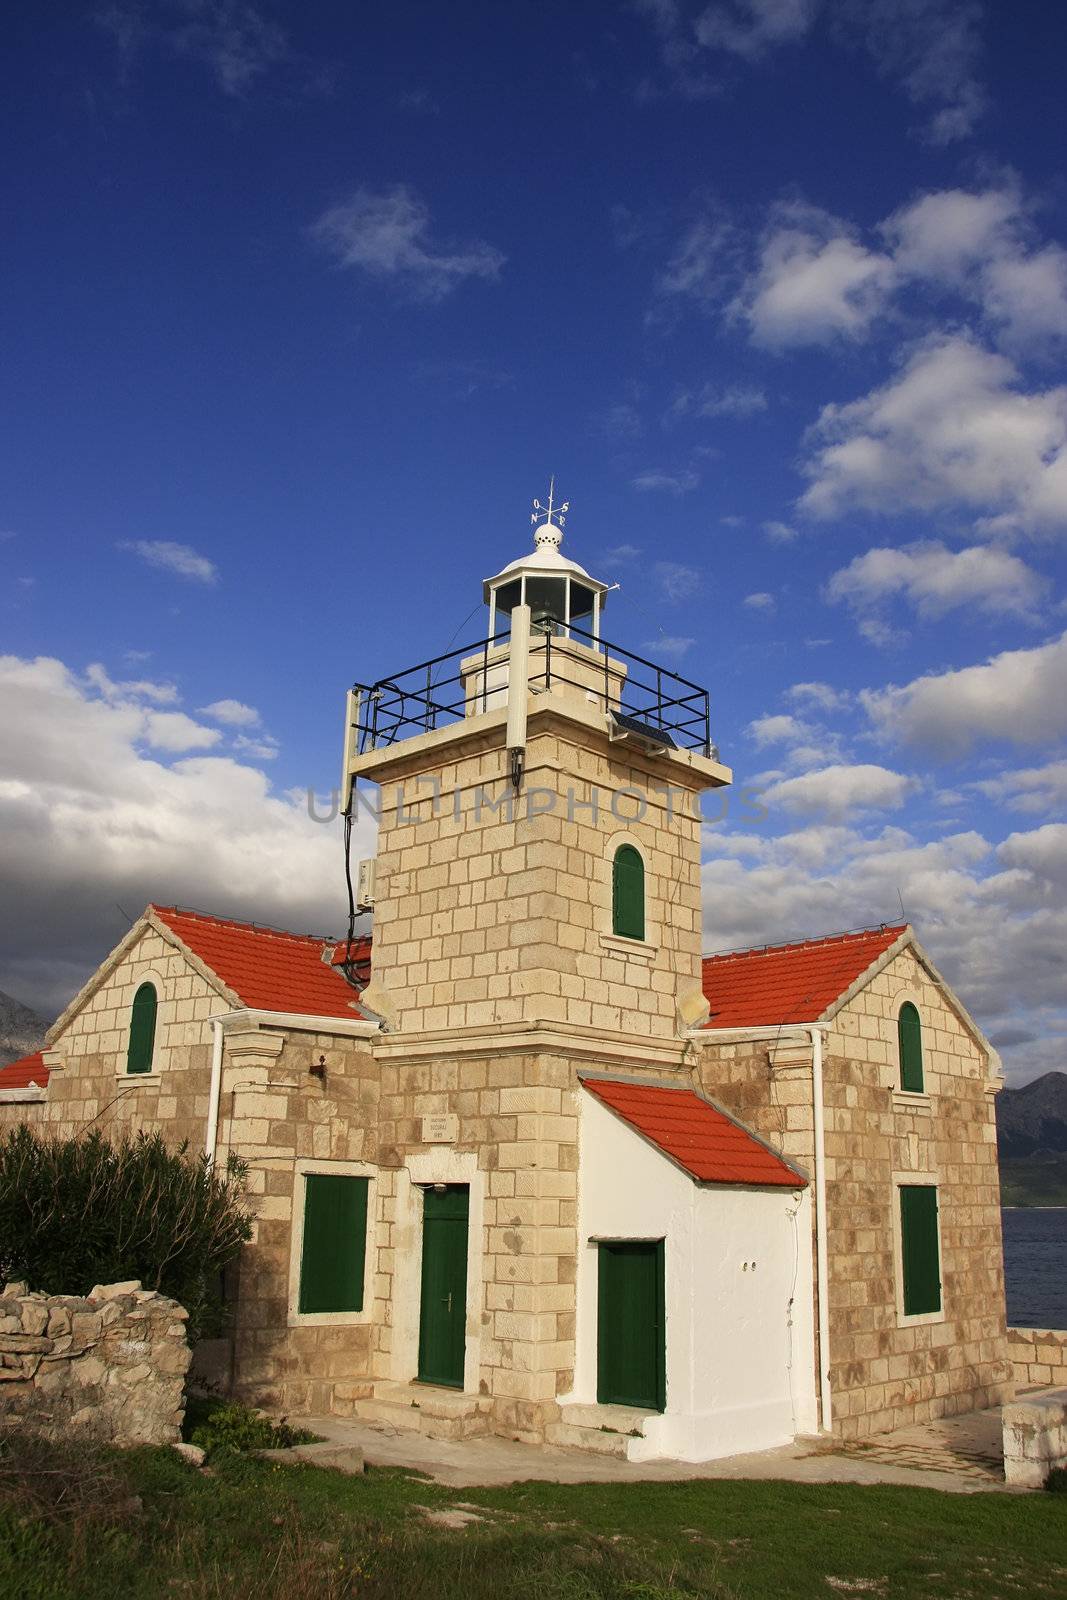 Lighthouse on Hvar island, Croatia